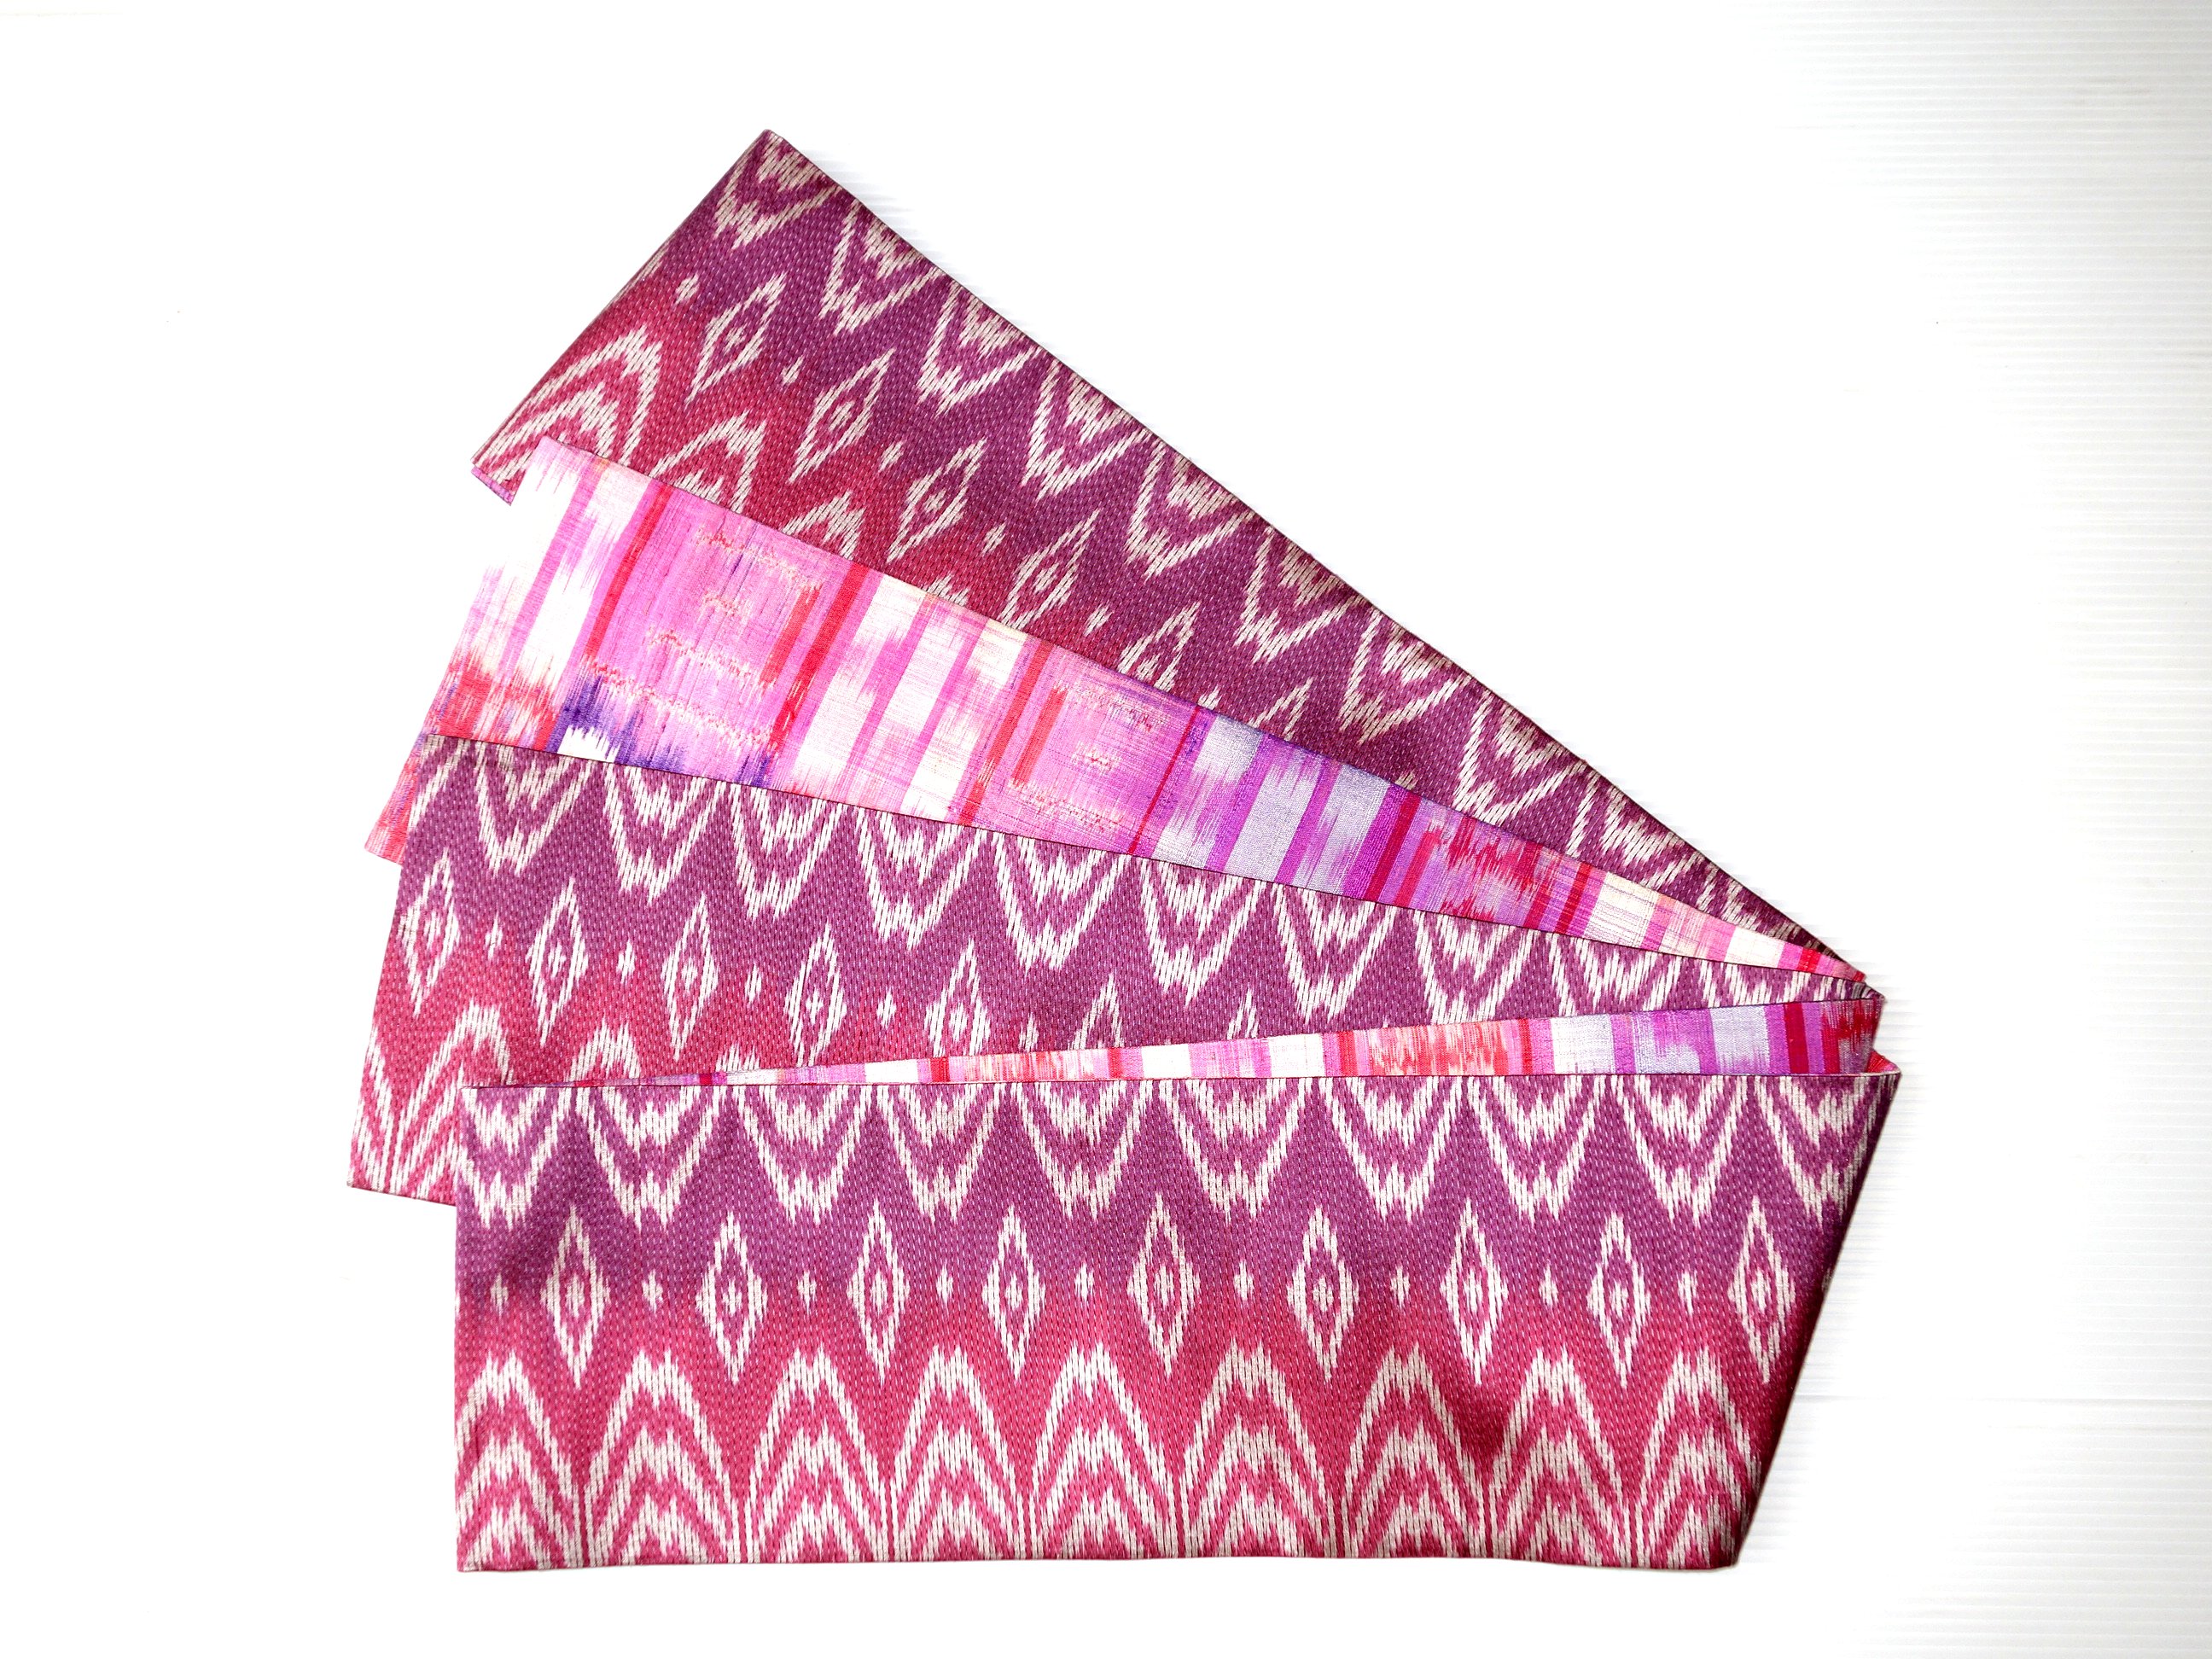 ｈａｎ1535 ピンク紫系タイシルク半幅帯 Iichi ハンドメイド クラフト作品 手仕事品の通販